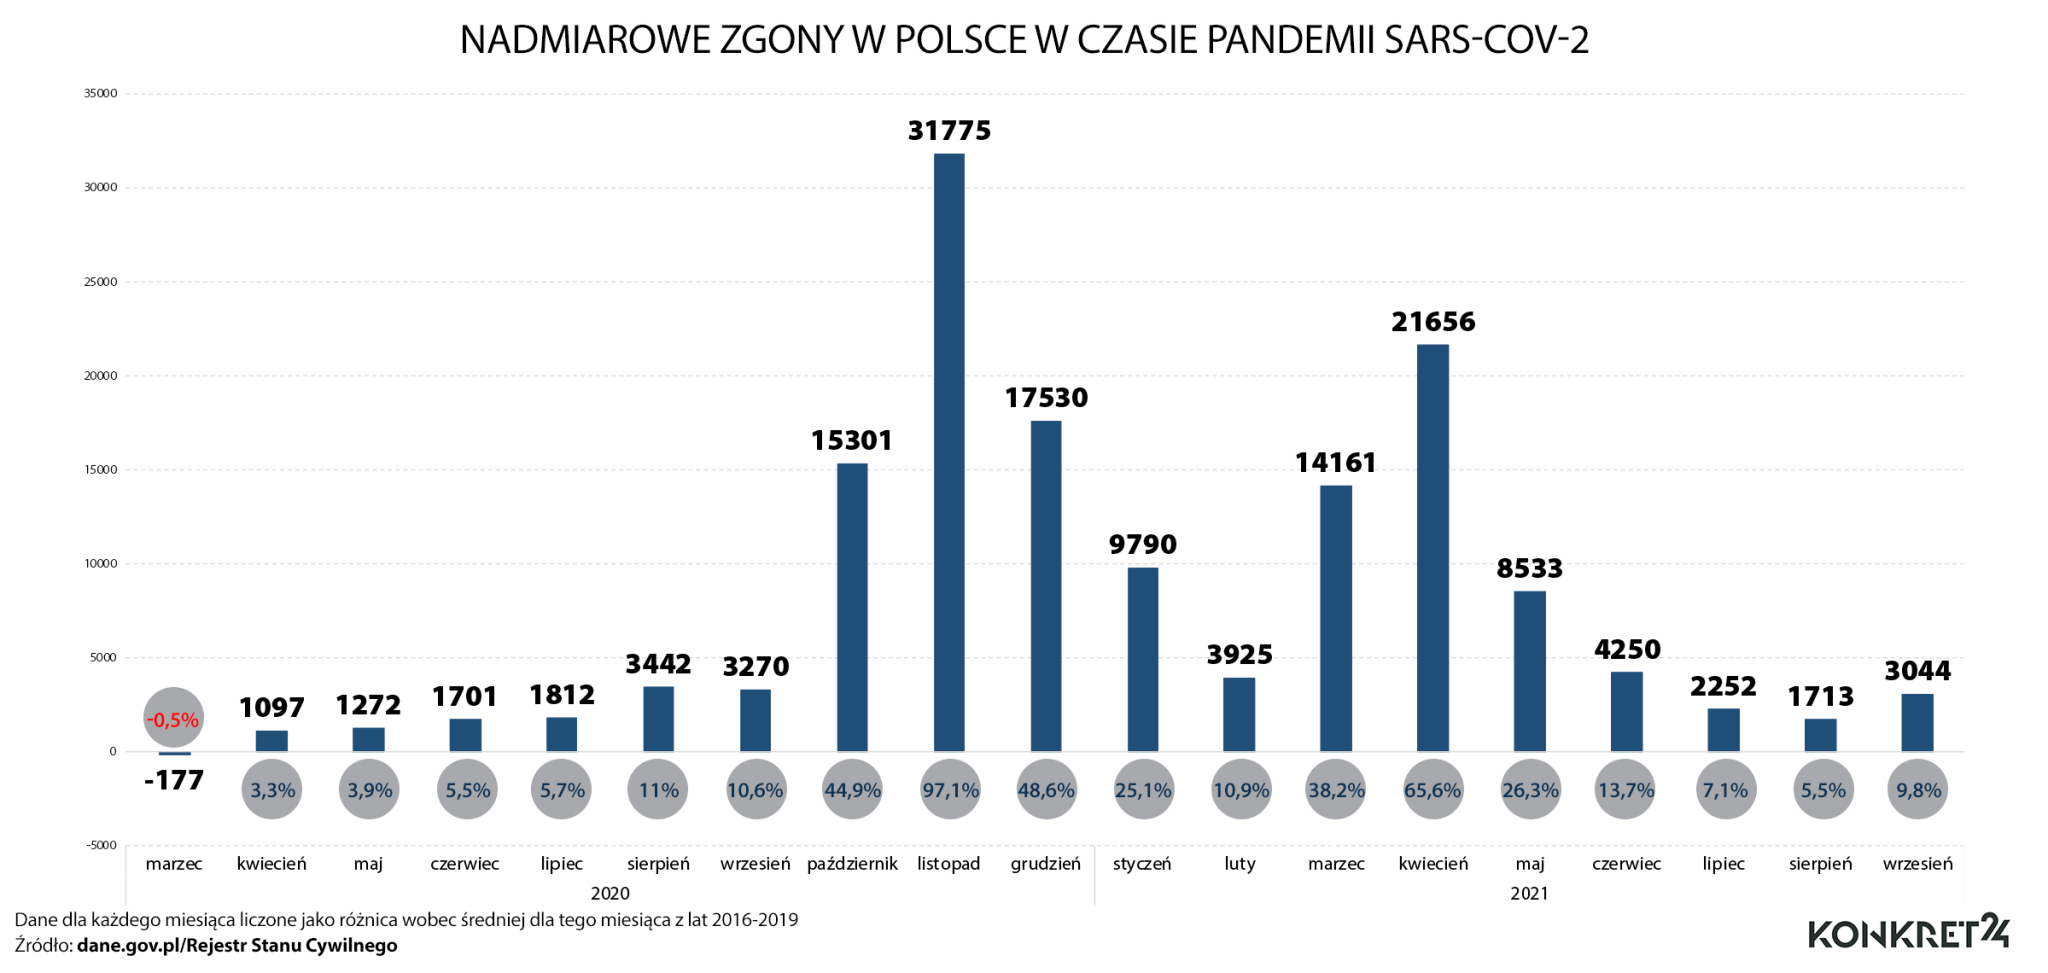 Nadmiarowe zgony w Polsce w czasie pandemii COVID-19